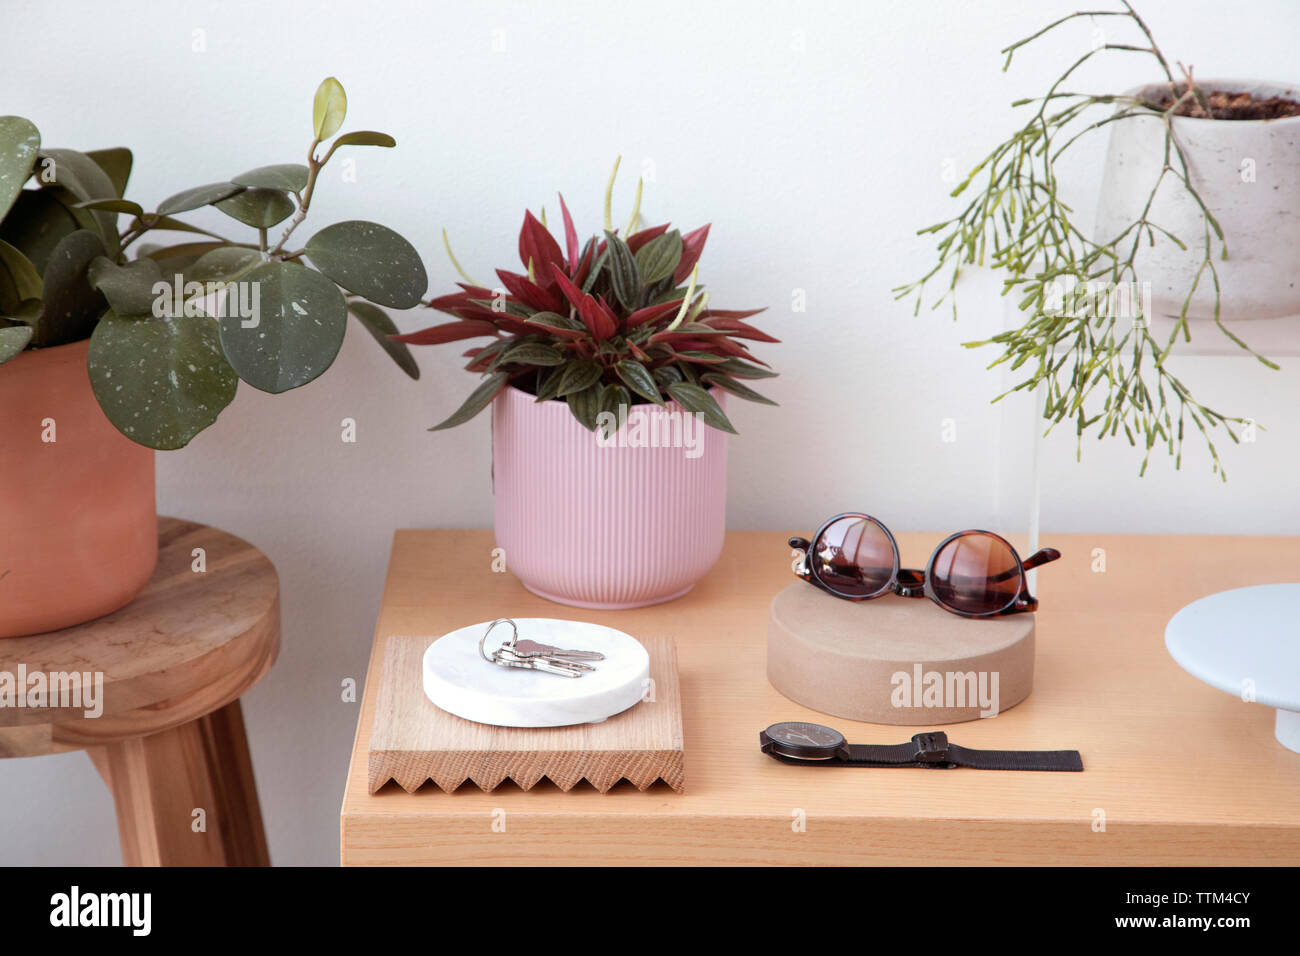 Portrait d'accessoires personnels avec les plantes et les touches disposées sur une table en bois contre le mur à la maison Banque D'Images